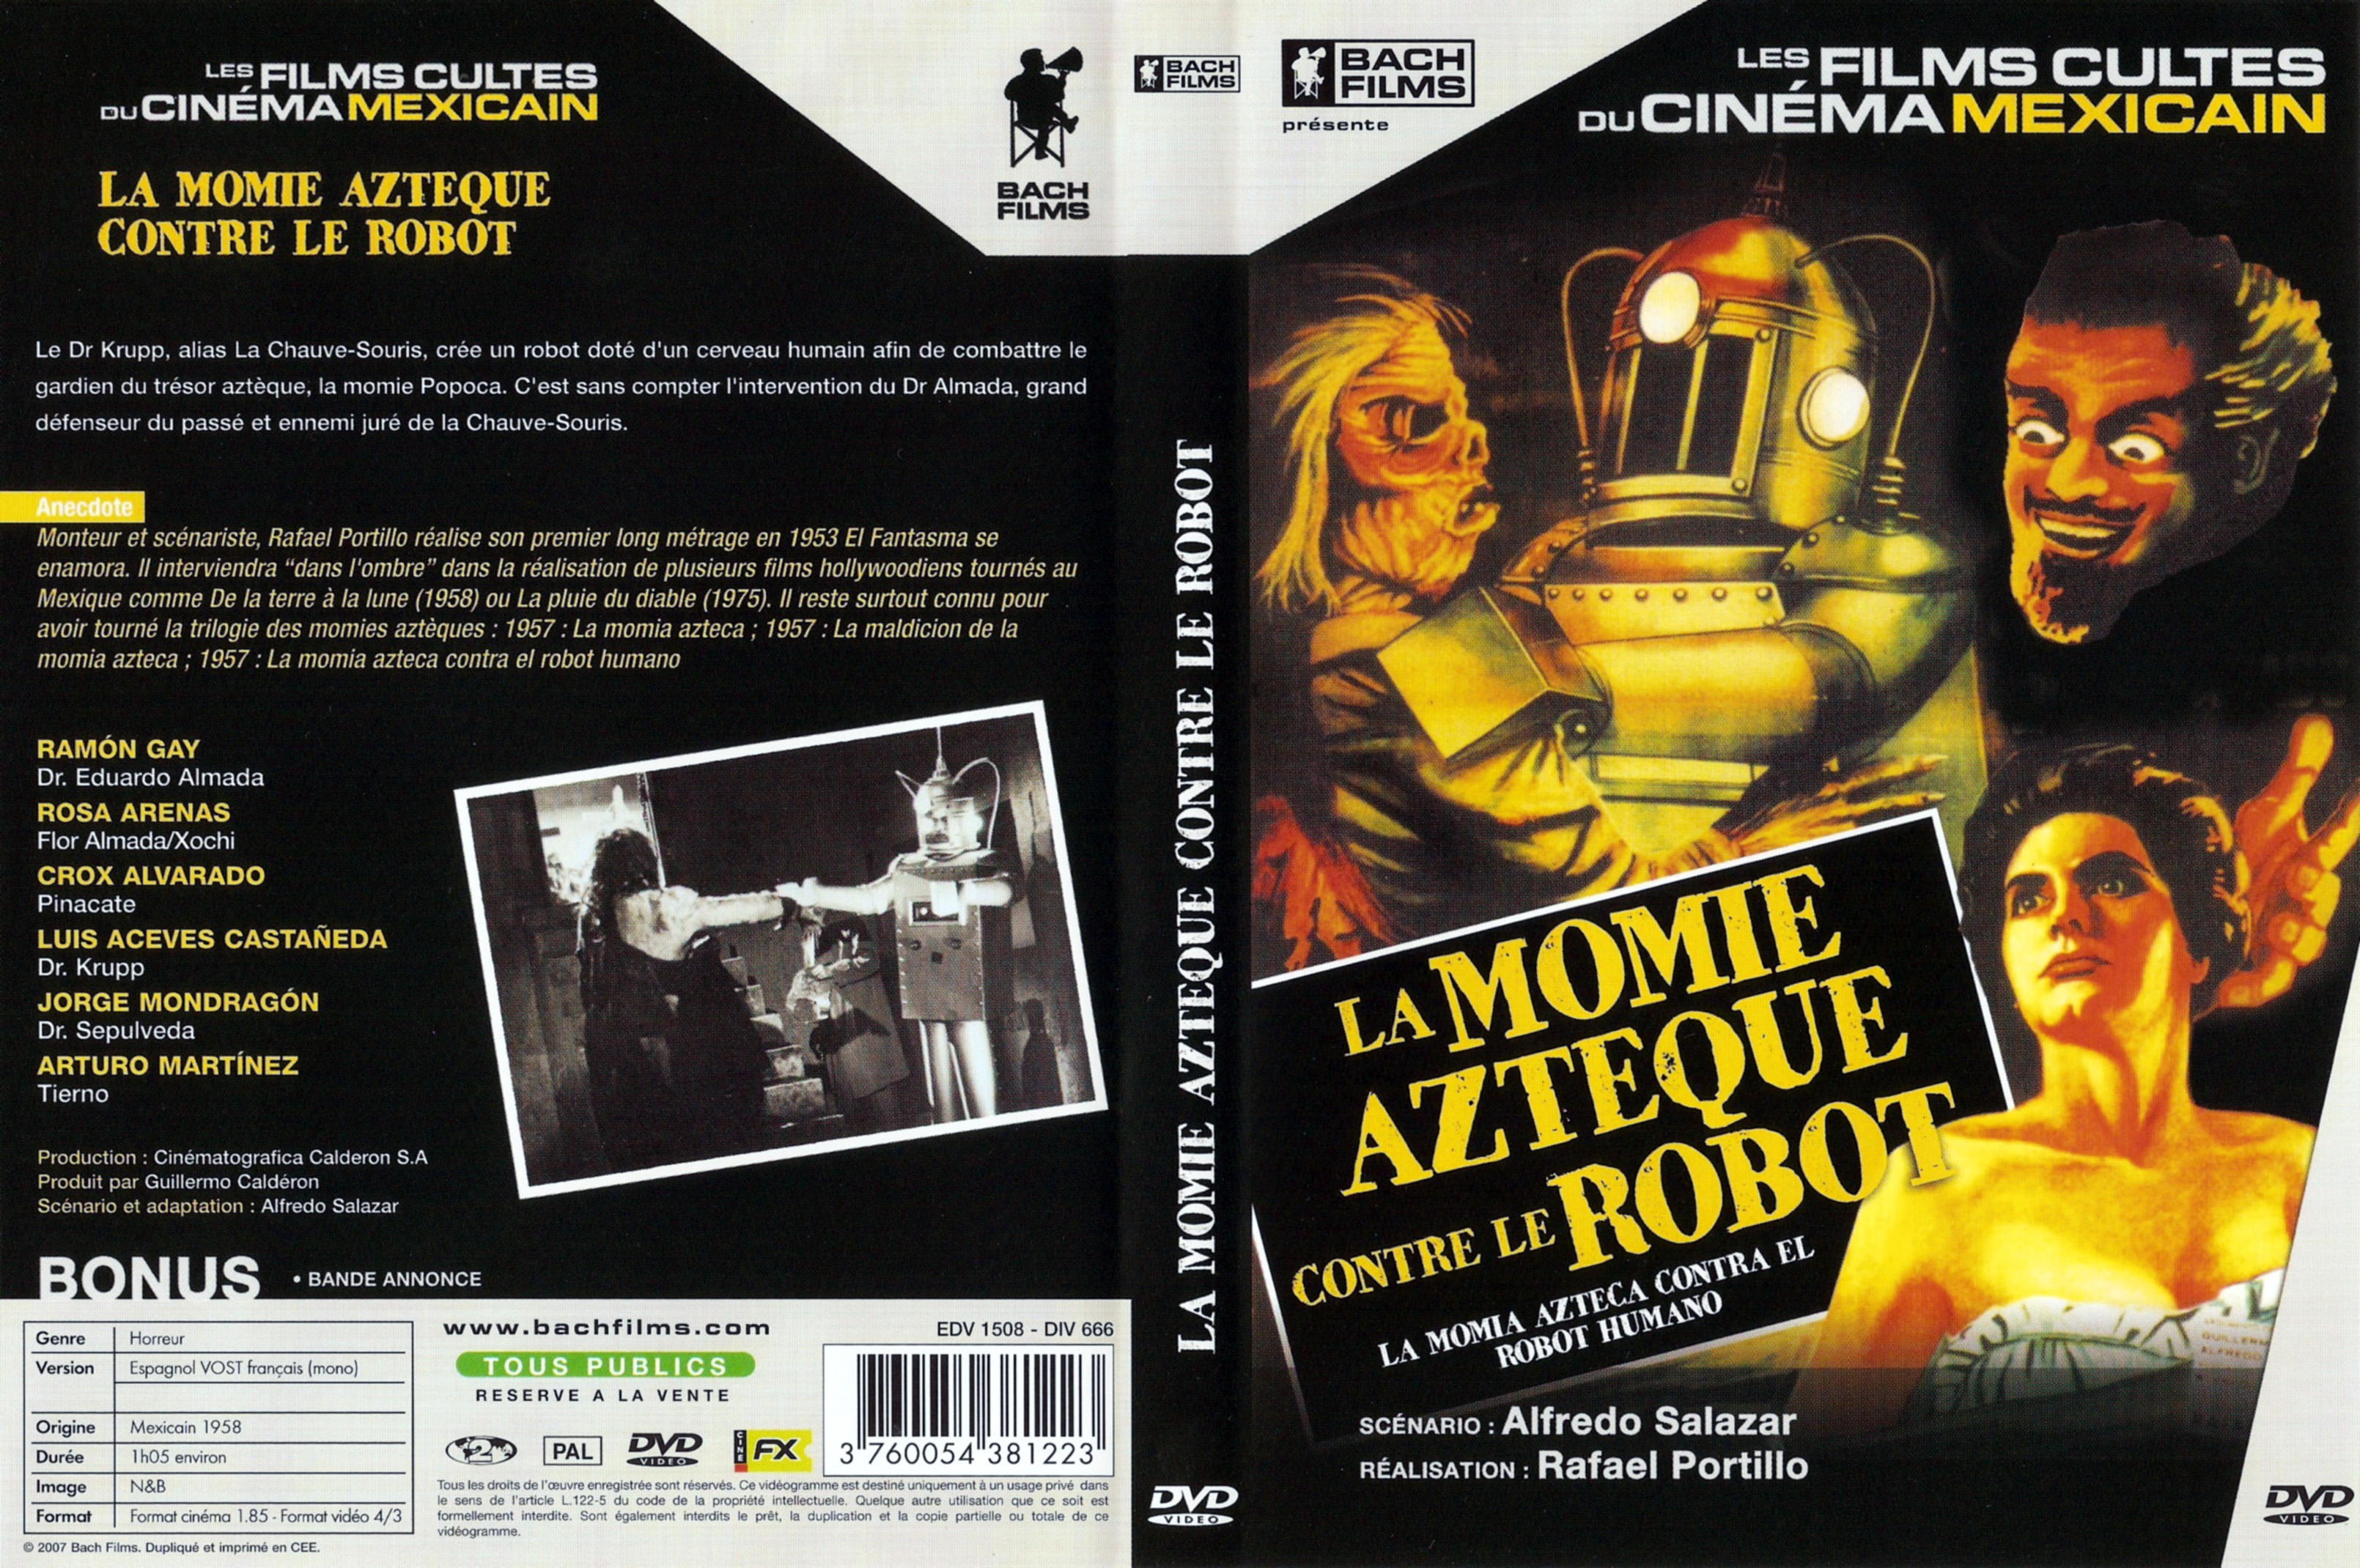 Jaquette DVD La momie azteque contre le robot